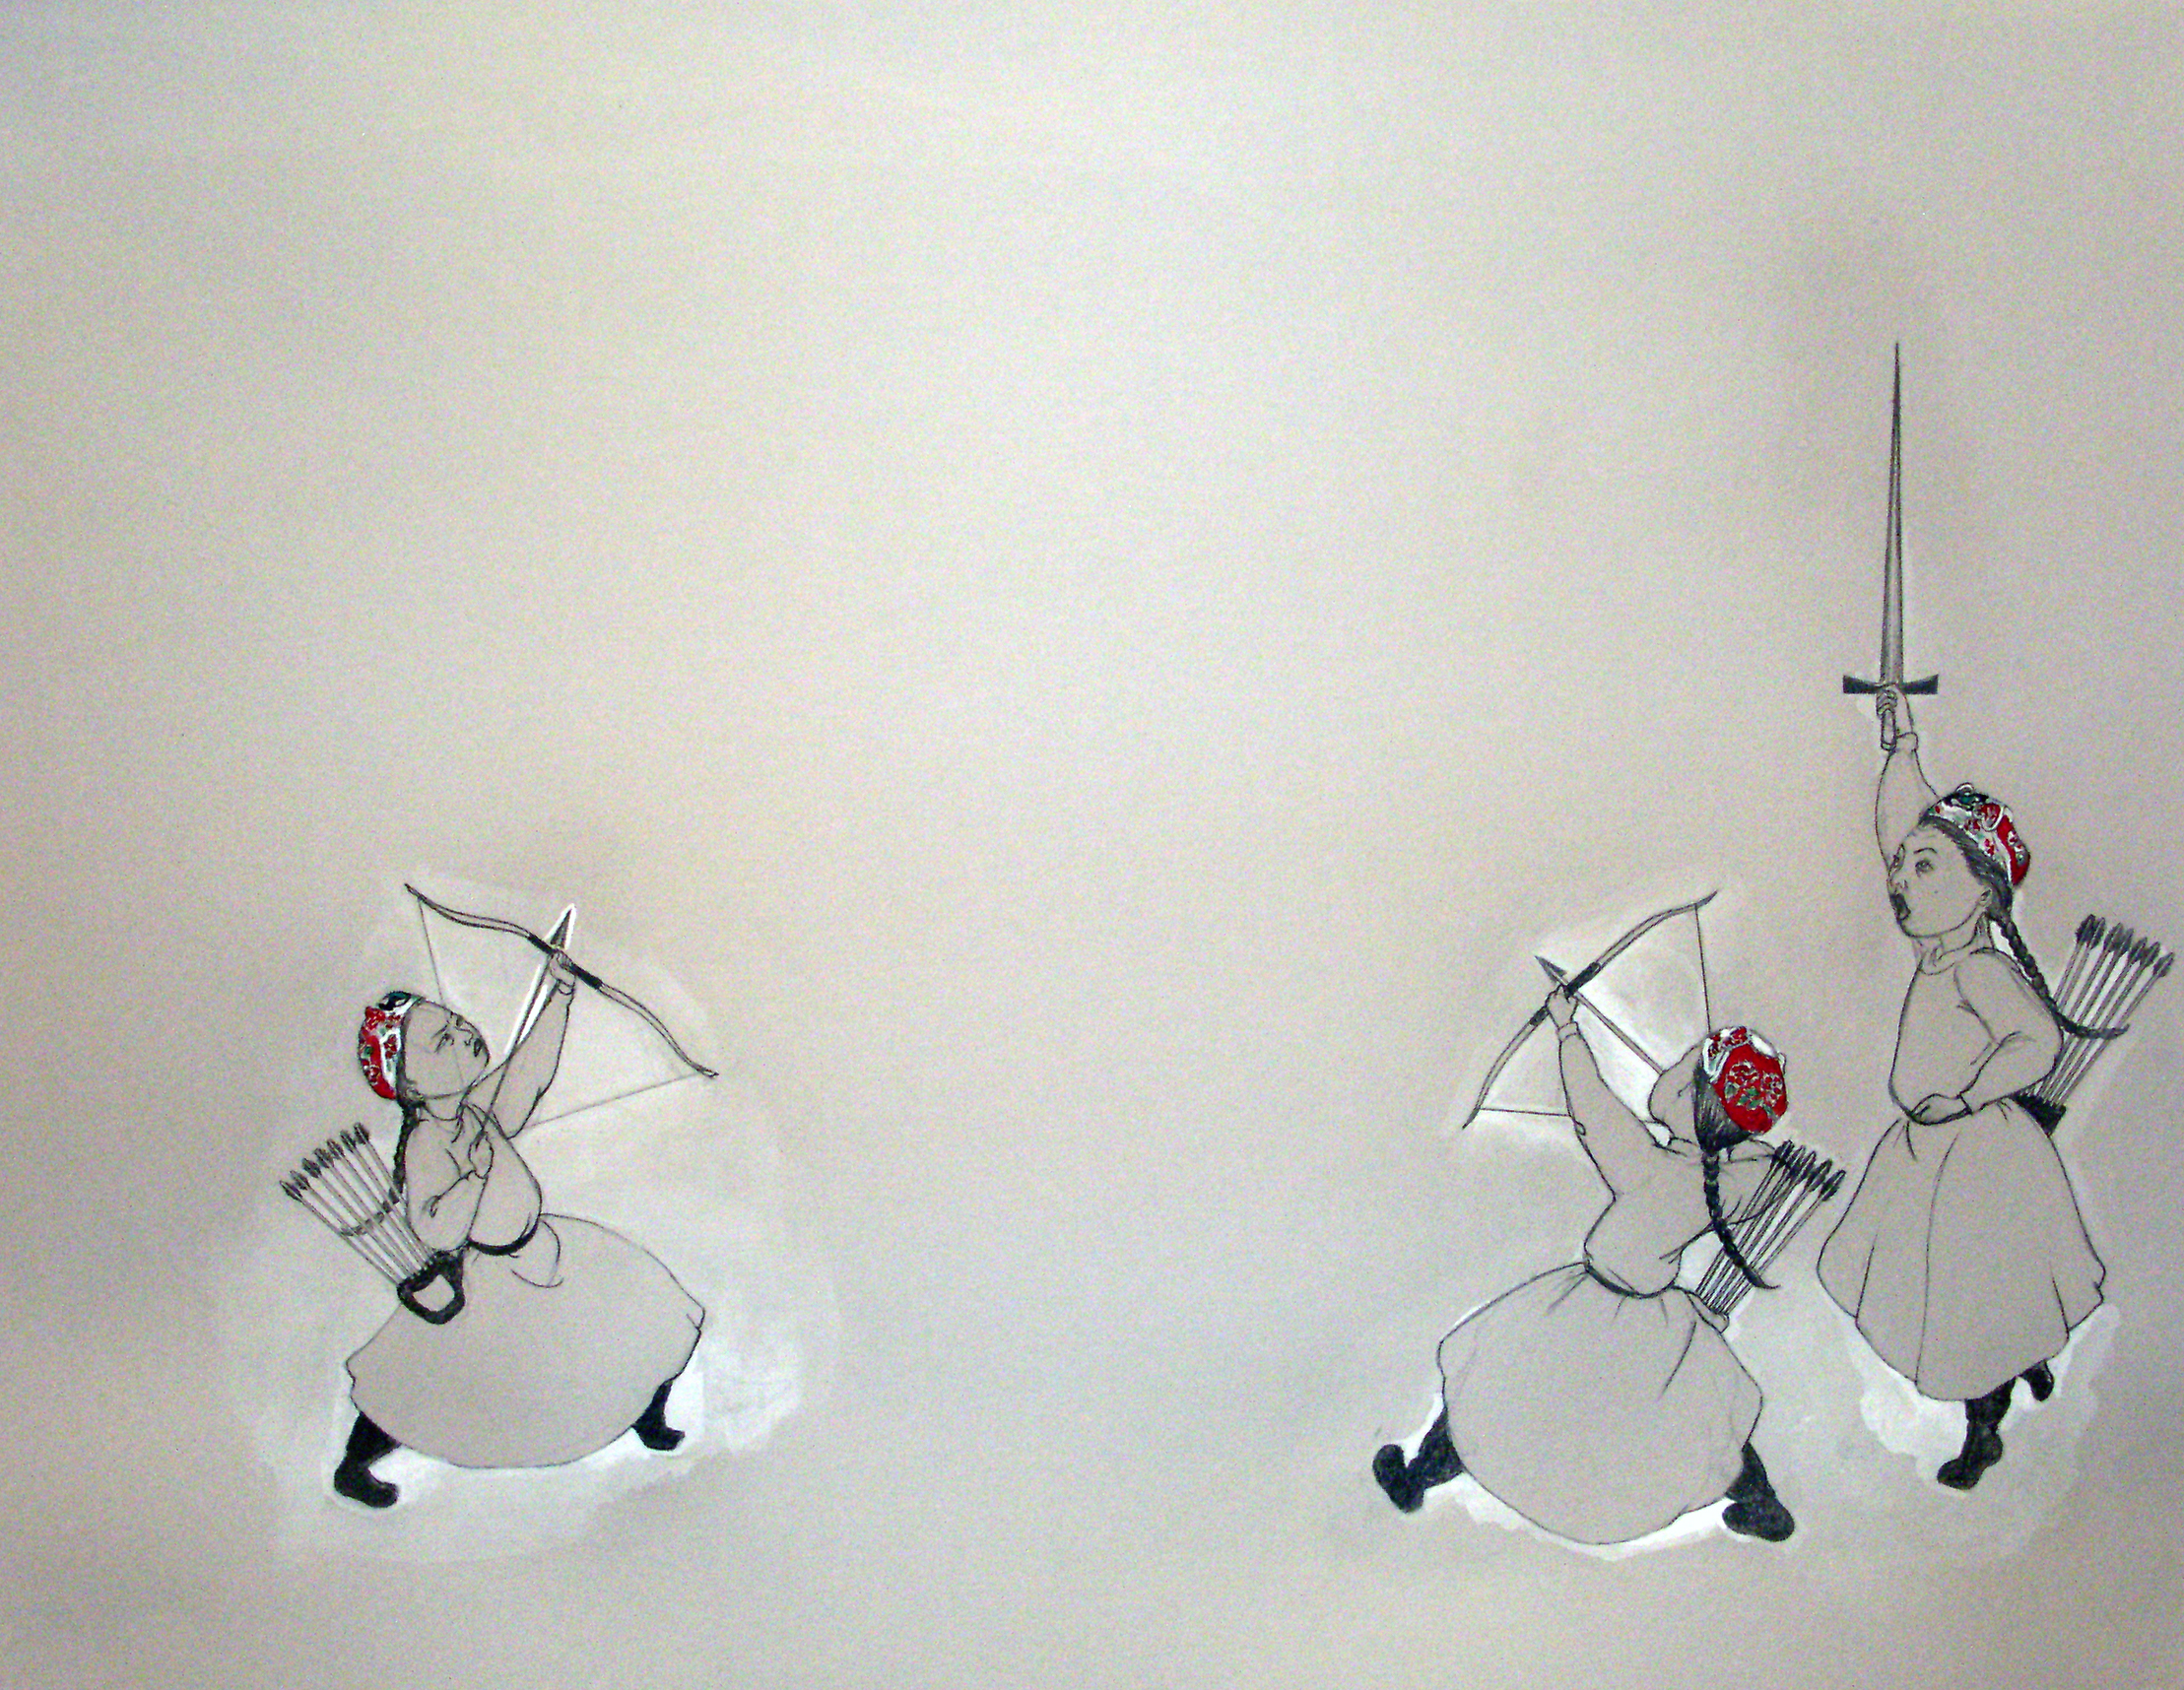   Showdown , 2006 Graphite, watercolor on gray paper 19 X 25 inches Private collection  